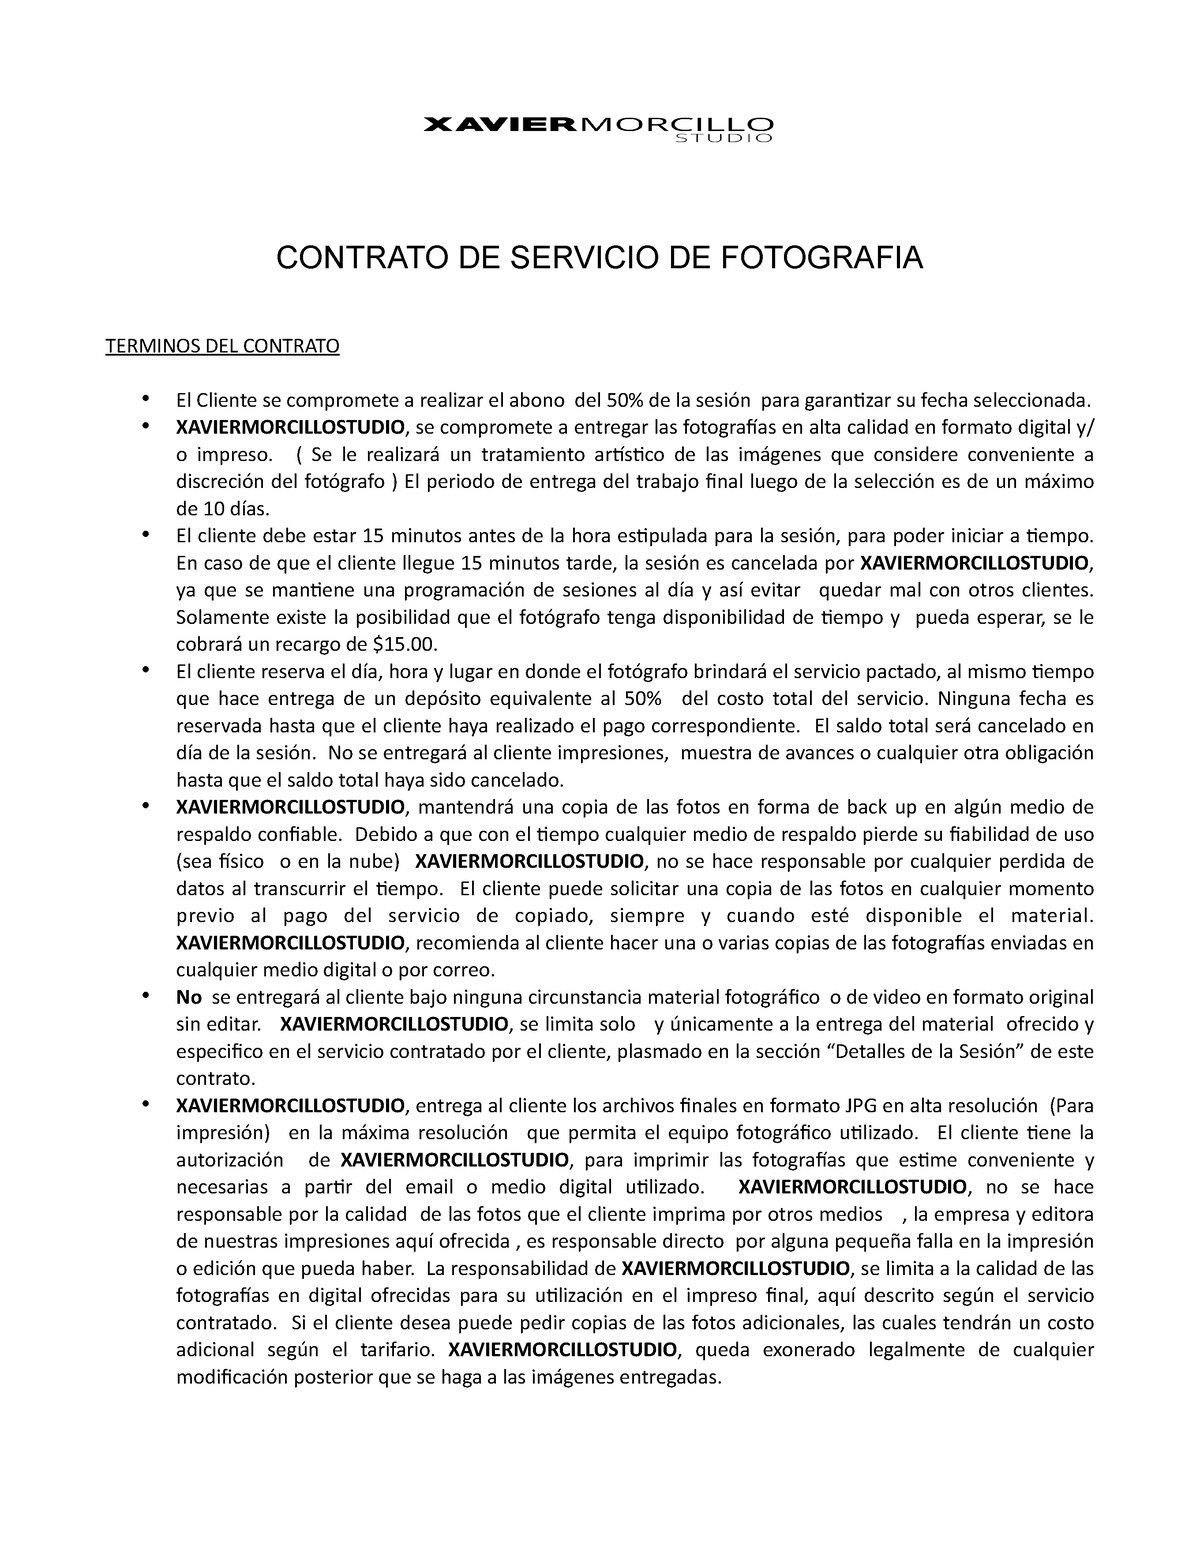 Contrato De Servicio De Fotografia Contrato De Servicio De Fotografia Terminos Del Contrato El 6609